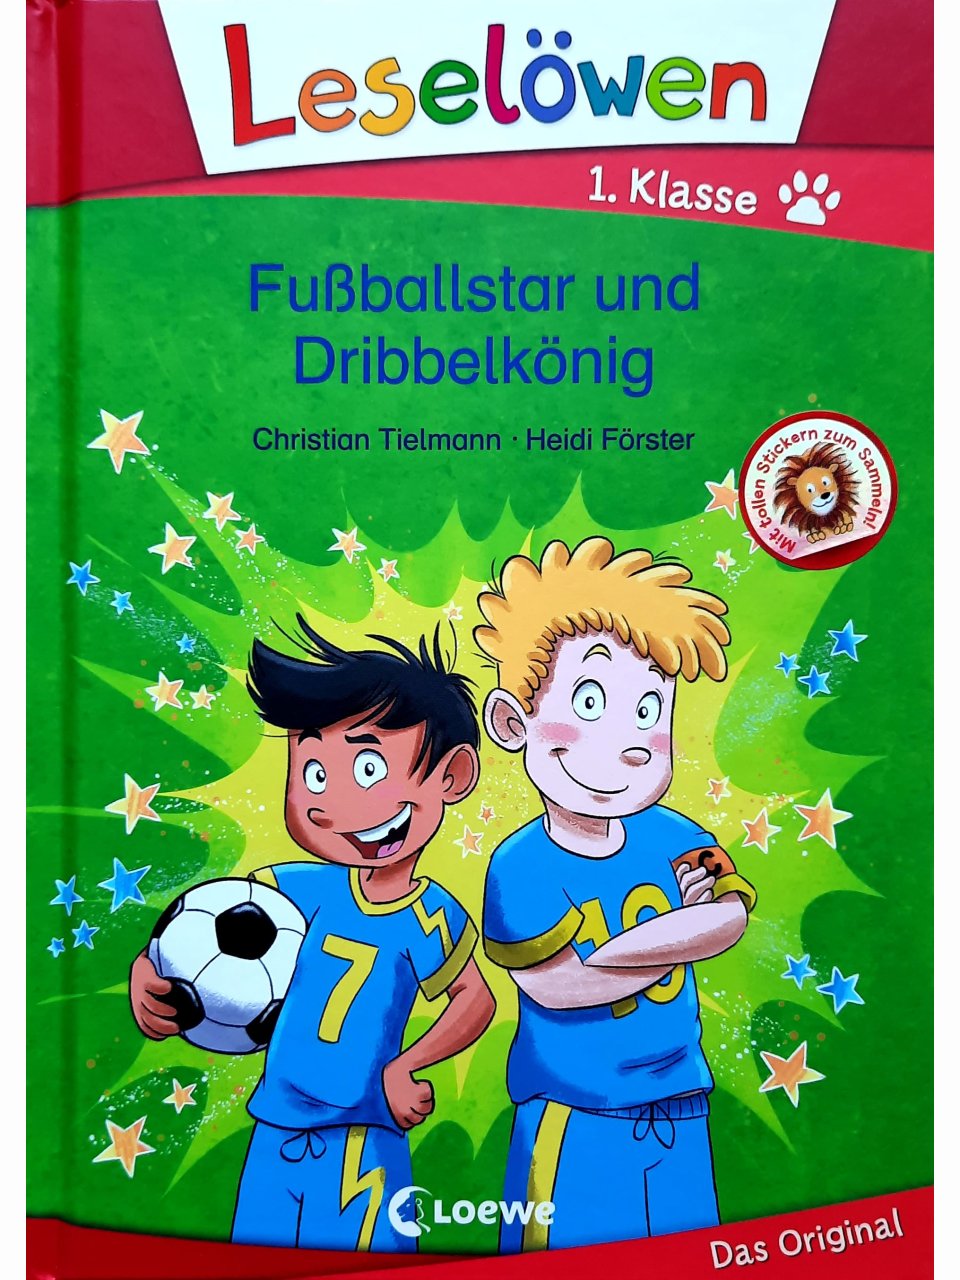 Fußballstar und Dribbelkönig - Leselöwen 1. Klasse